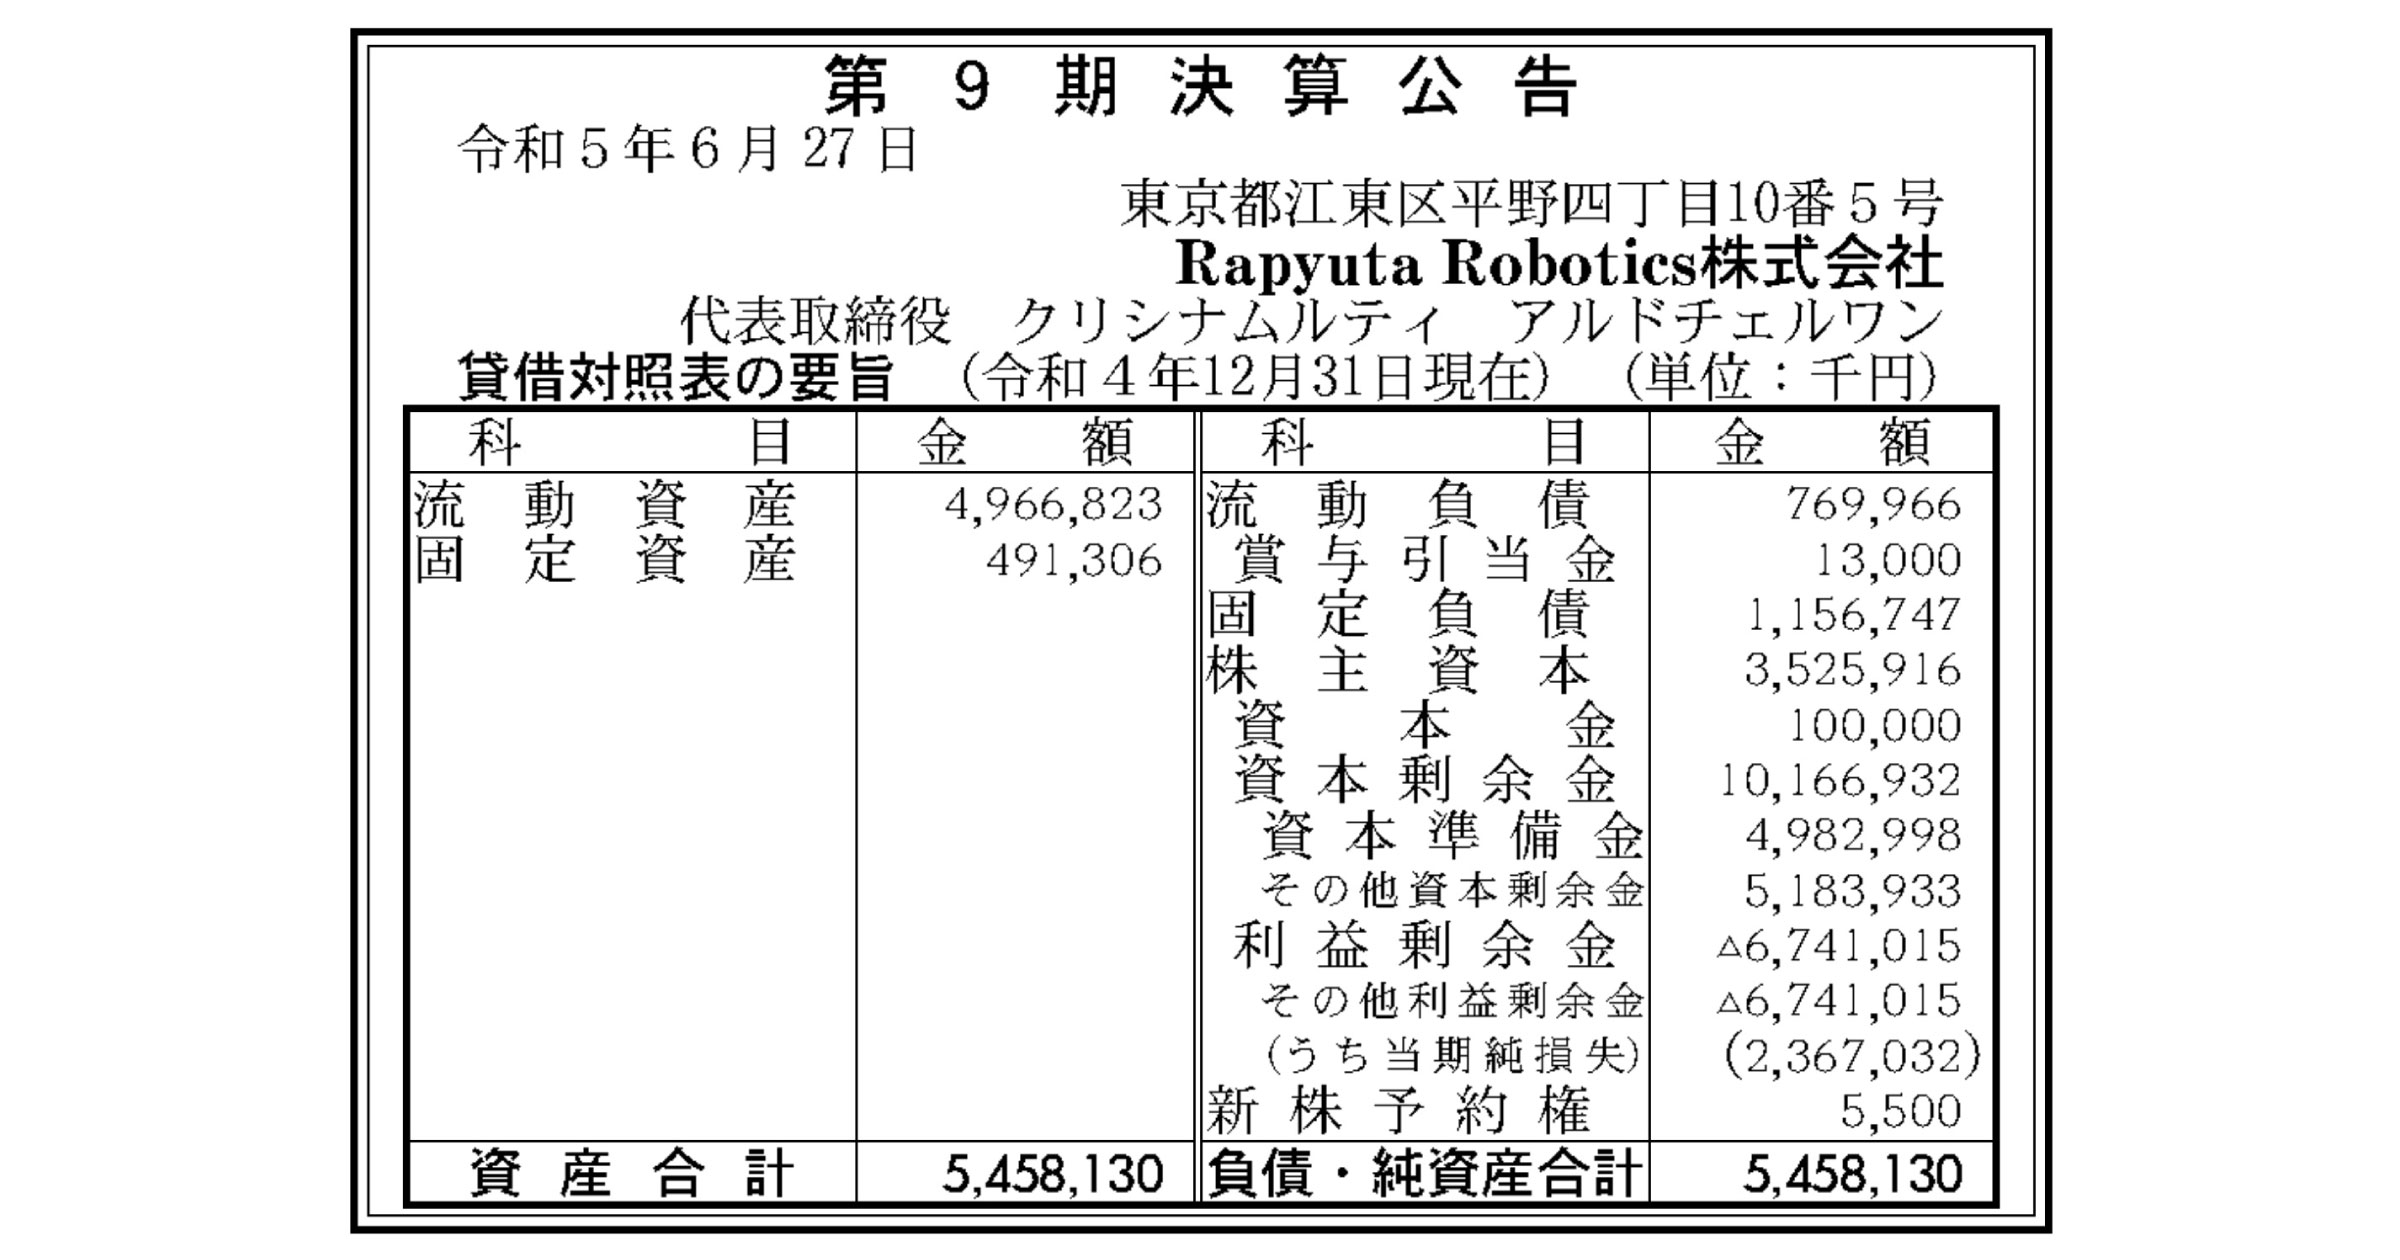 物流倉庫ロボ開発のRapyuta Robotics、損失大幅増の23億円規模に